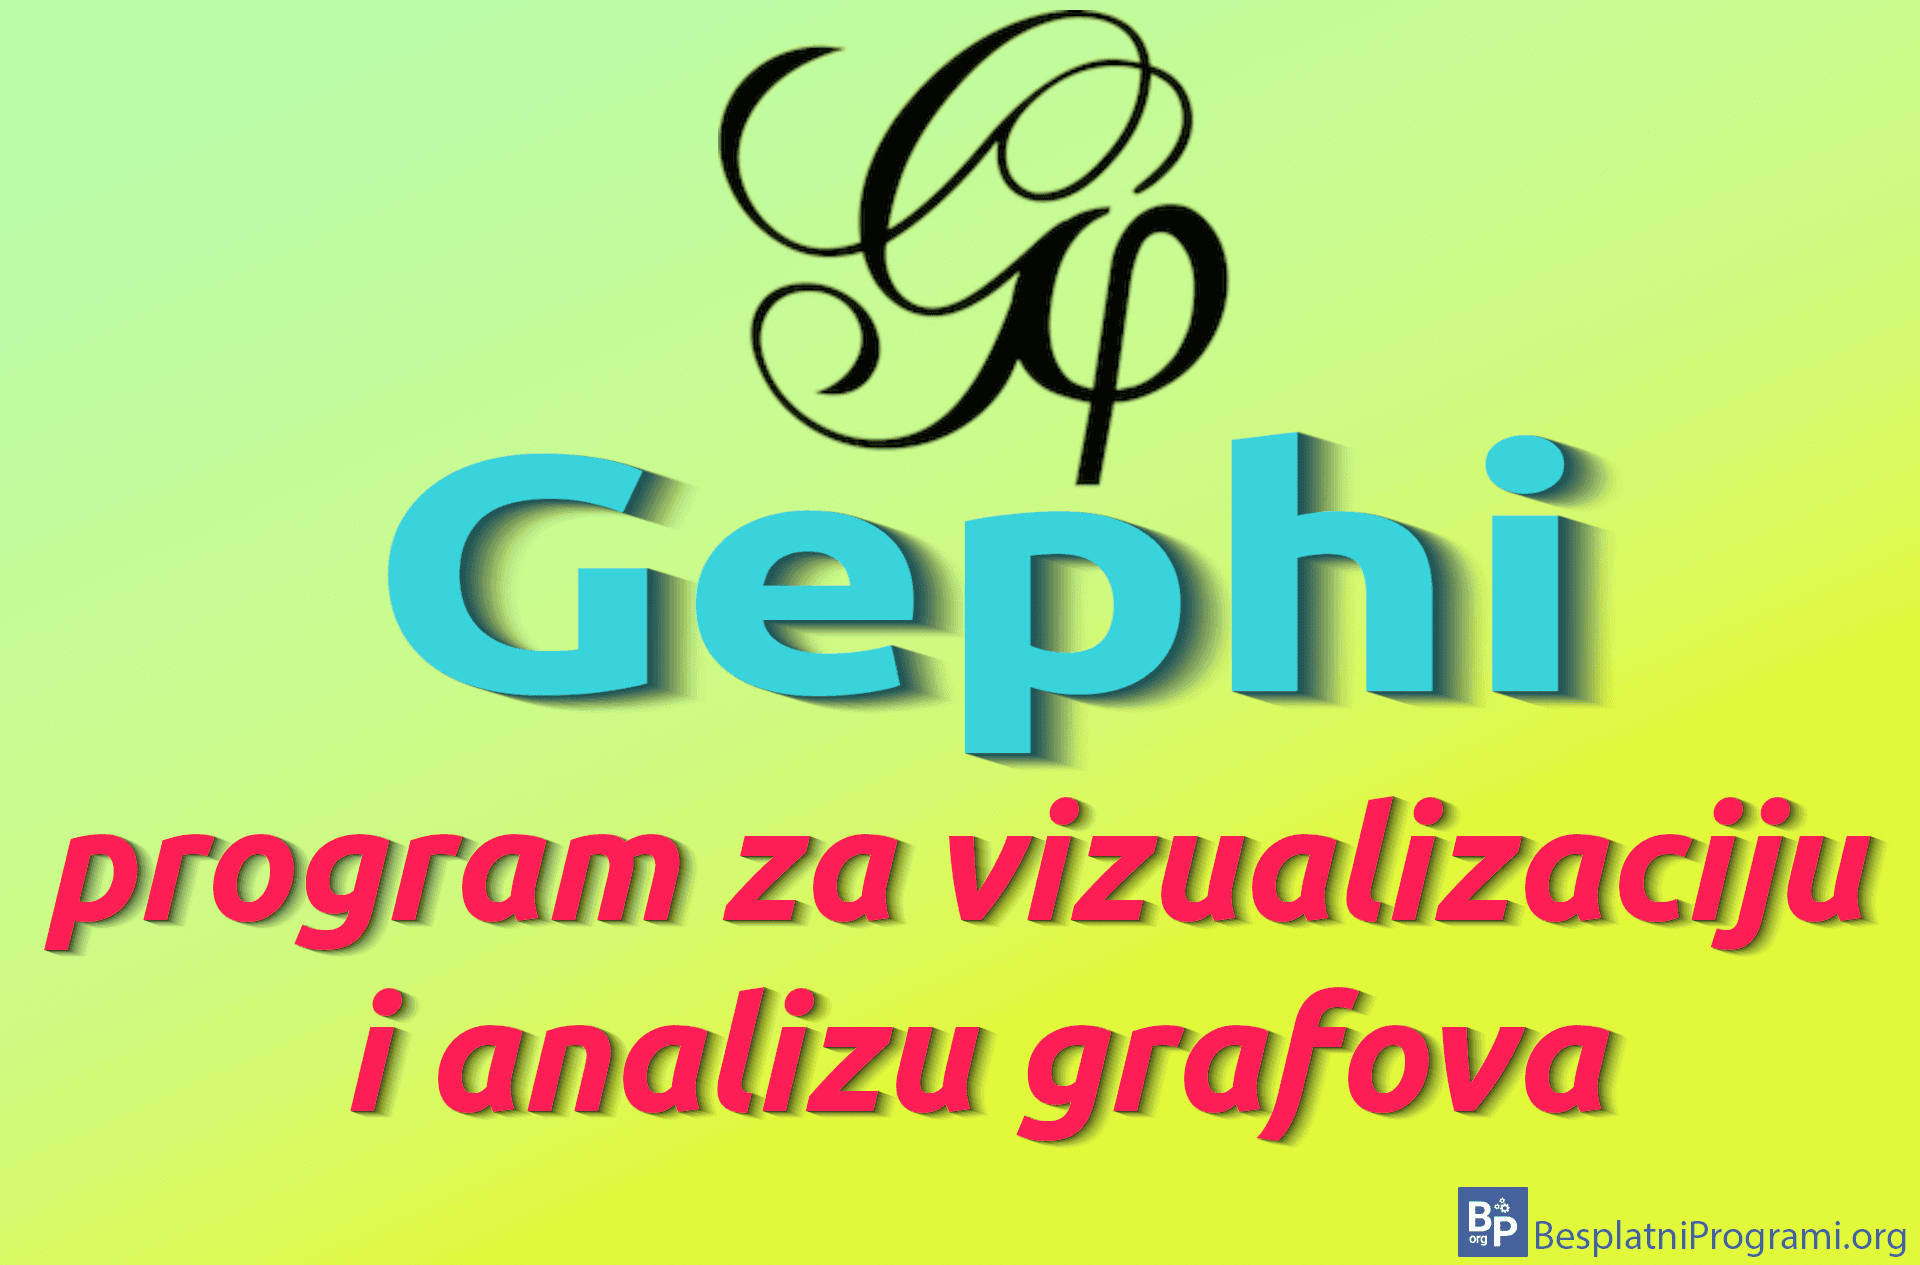 gephi-program-za-vizualizaciju-i-analizu-grafova